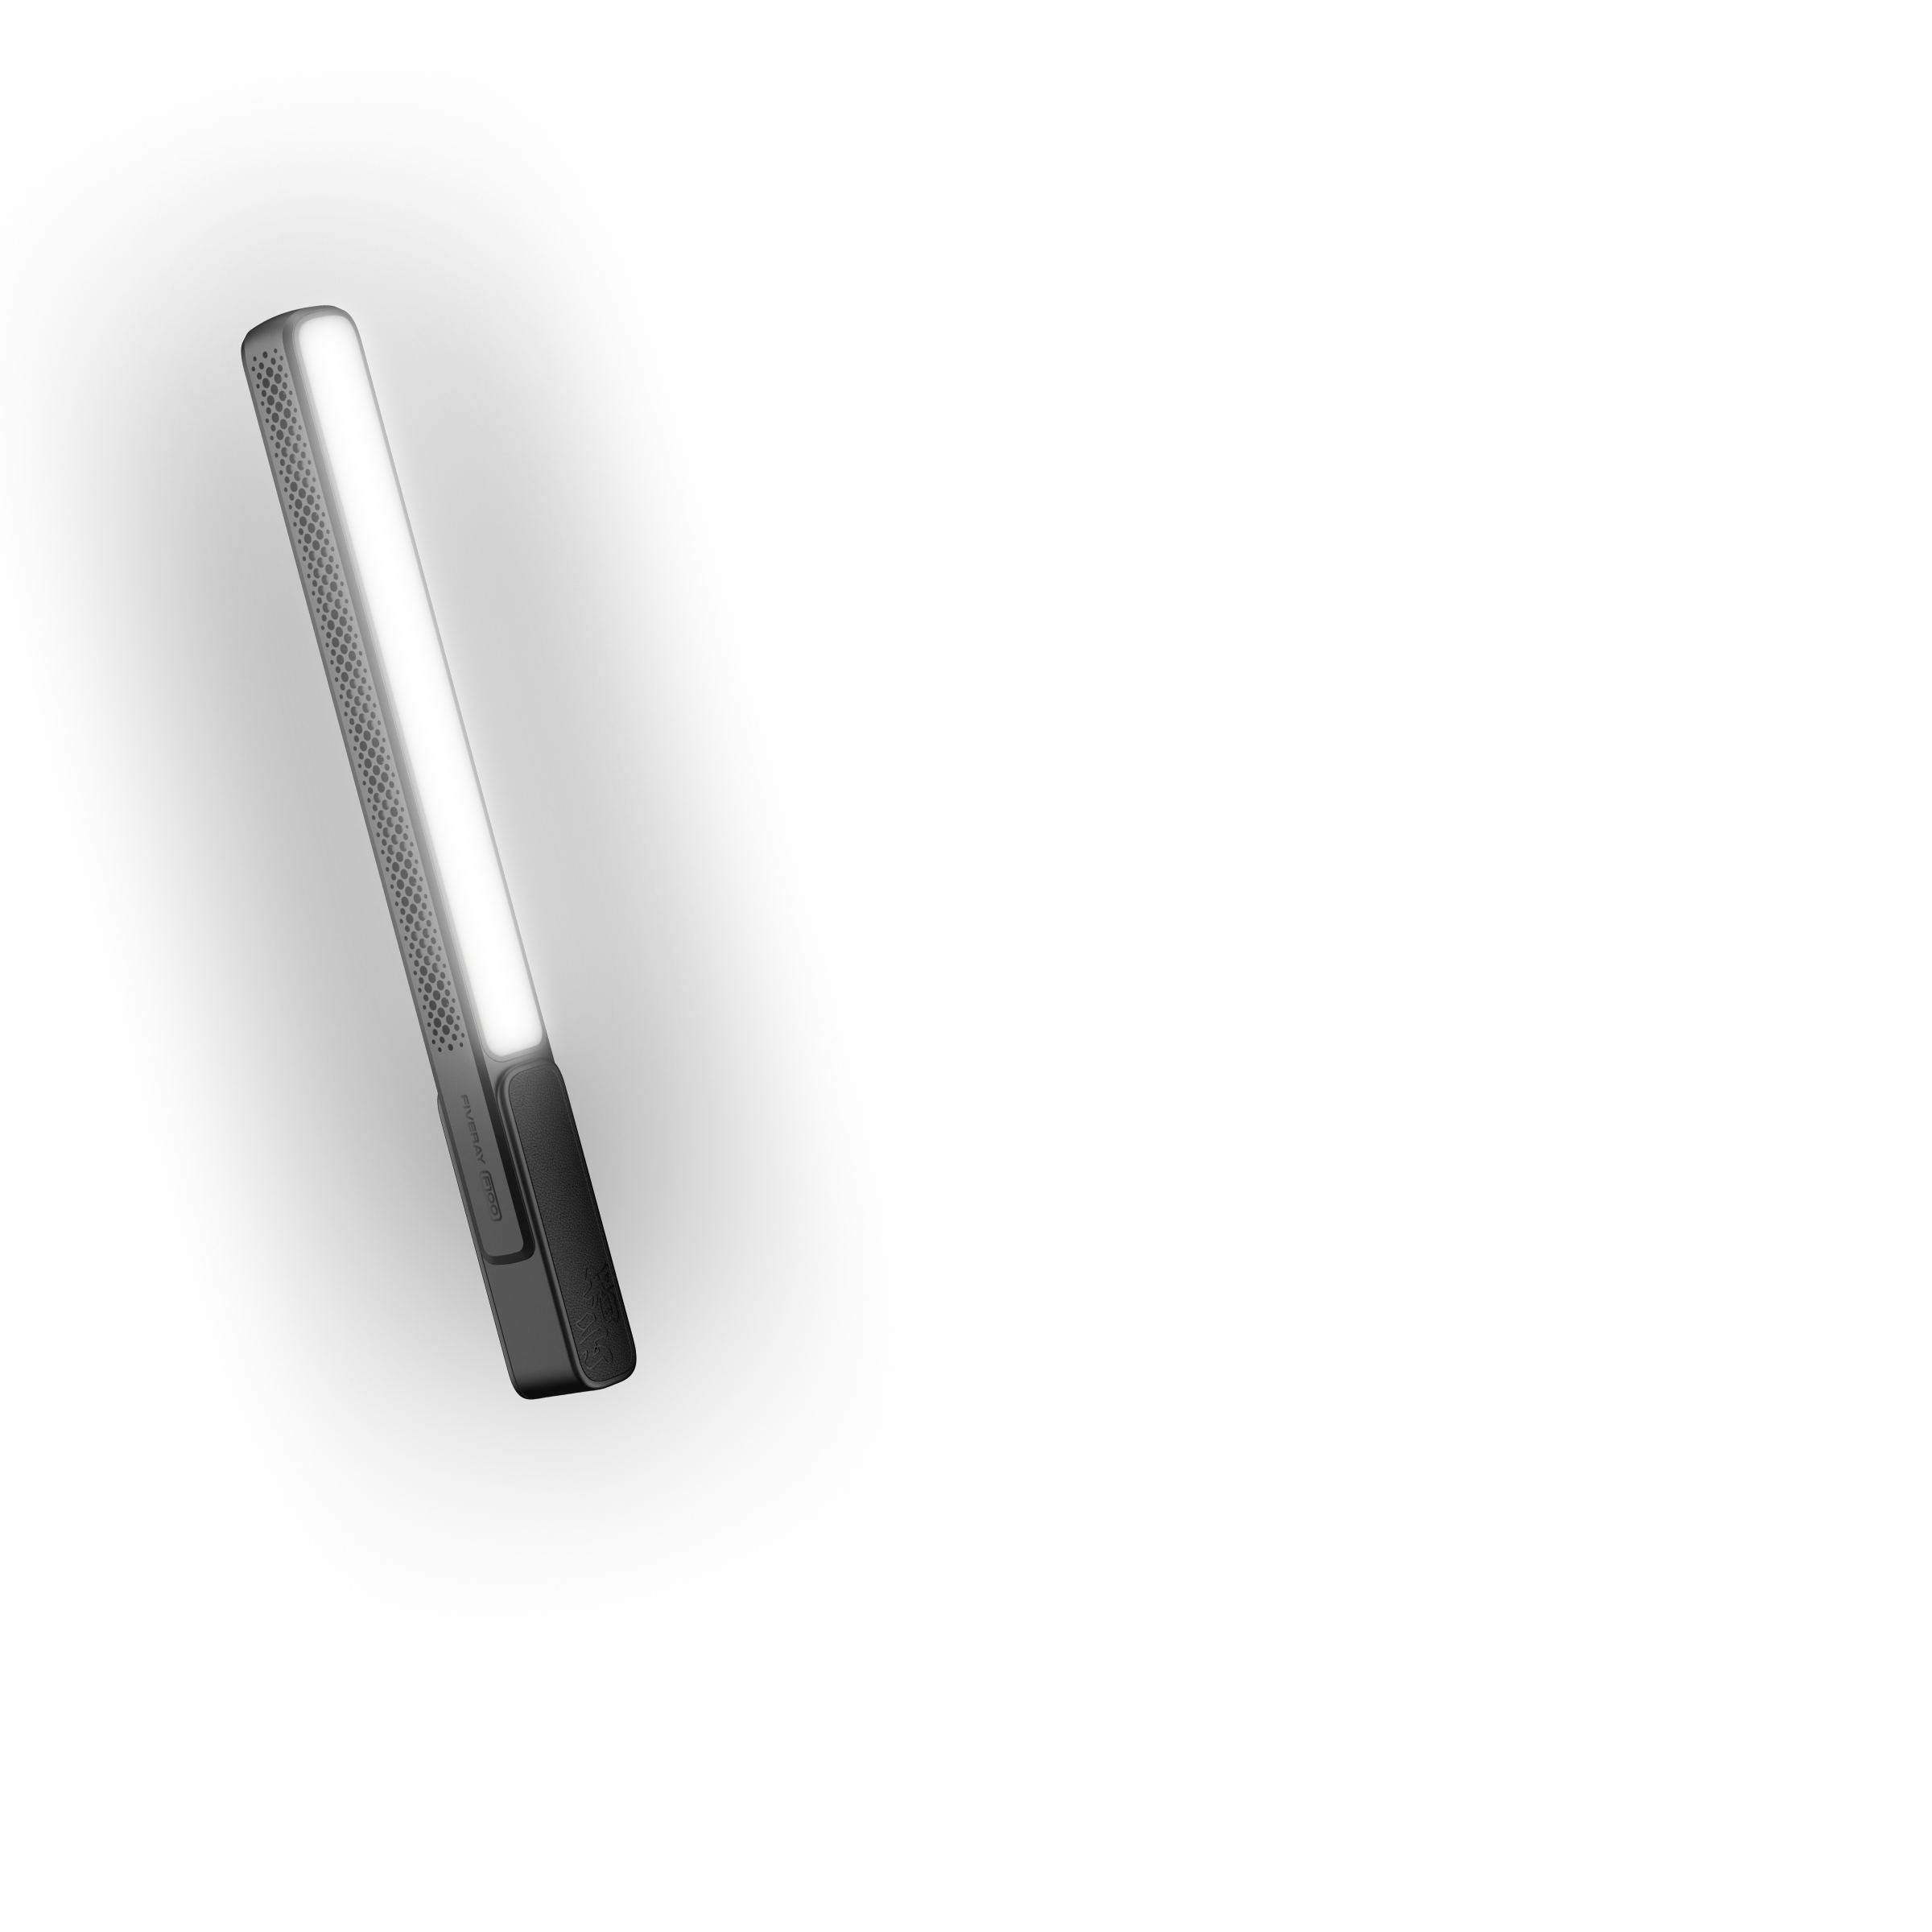 話題の人気 ZHIYUN FIVERAY 100W LEDビデオライト スティック型撮影用ライト Type-C充電式 6種FXモード色温度2700- 6200K 4インチネジ穴付き 高輝度 商品撮影 LEDスタジオ撮影 YouTube Tiktok